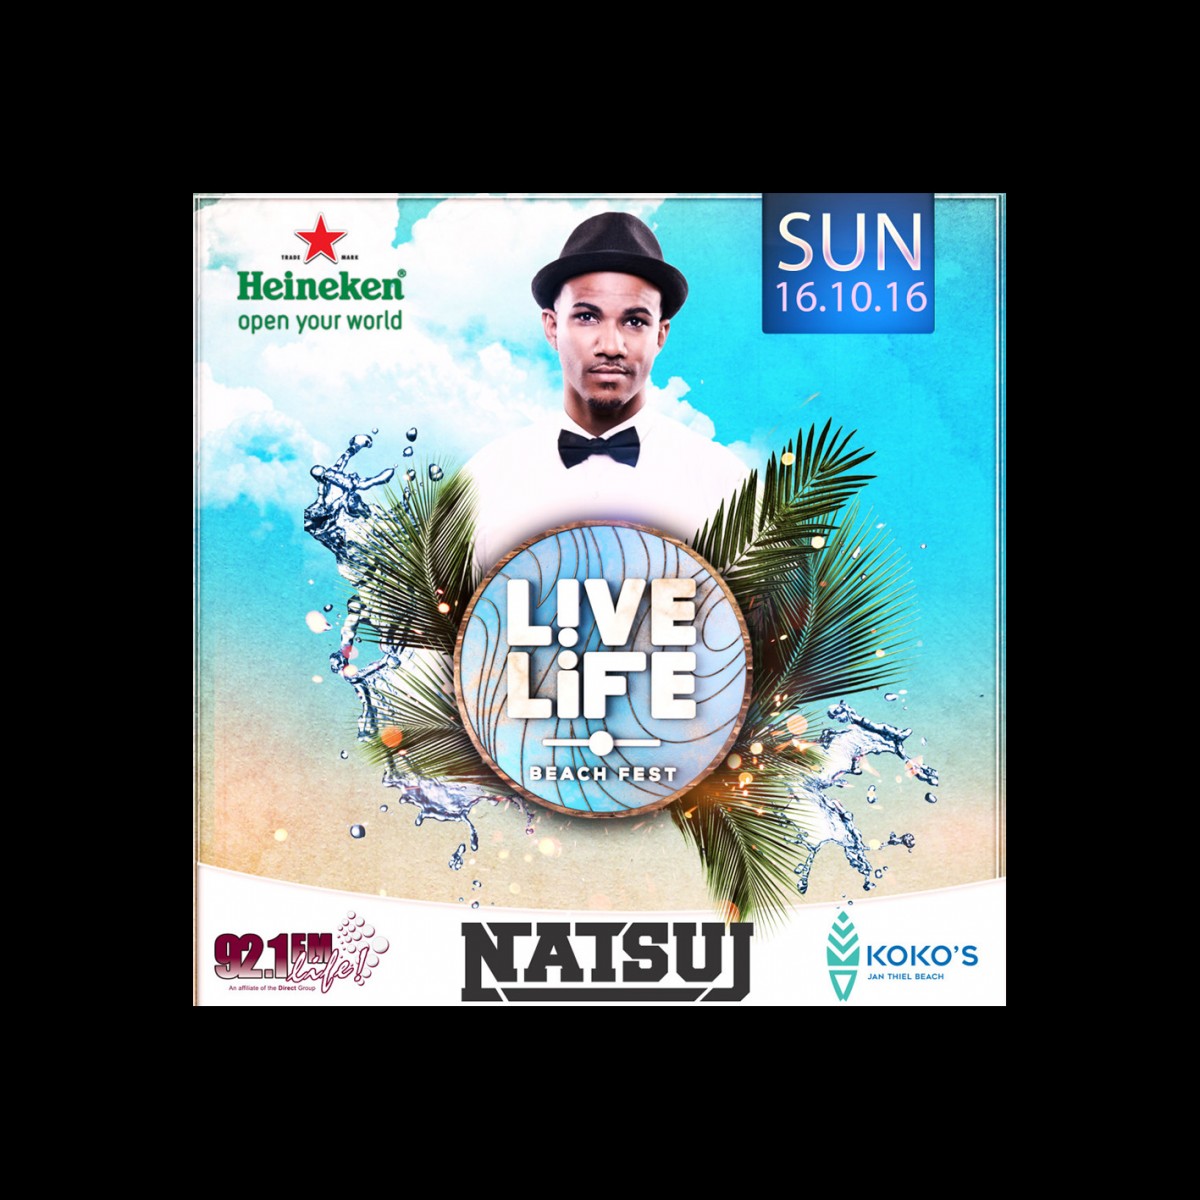 92.1 FM Curacao Presents: Live Life